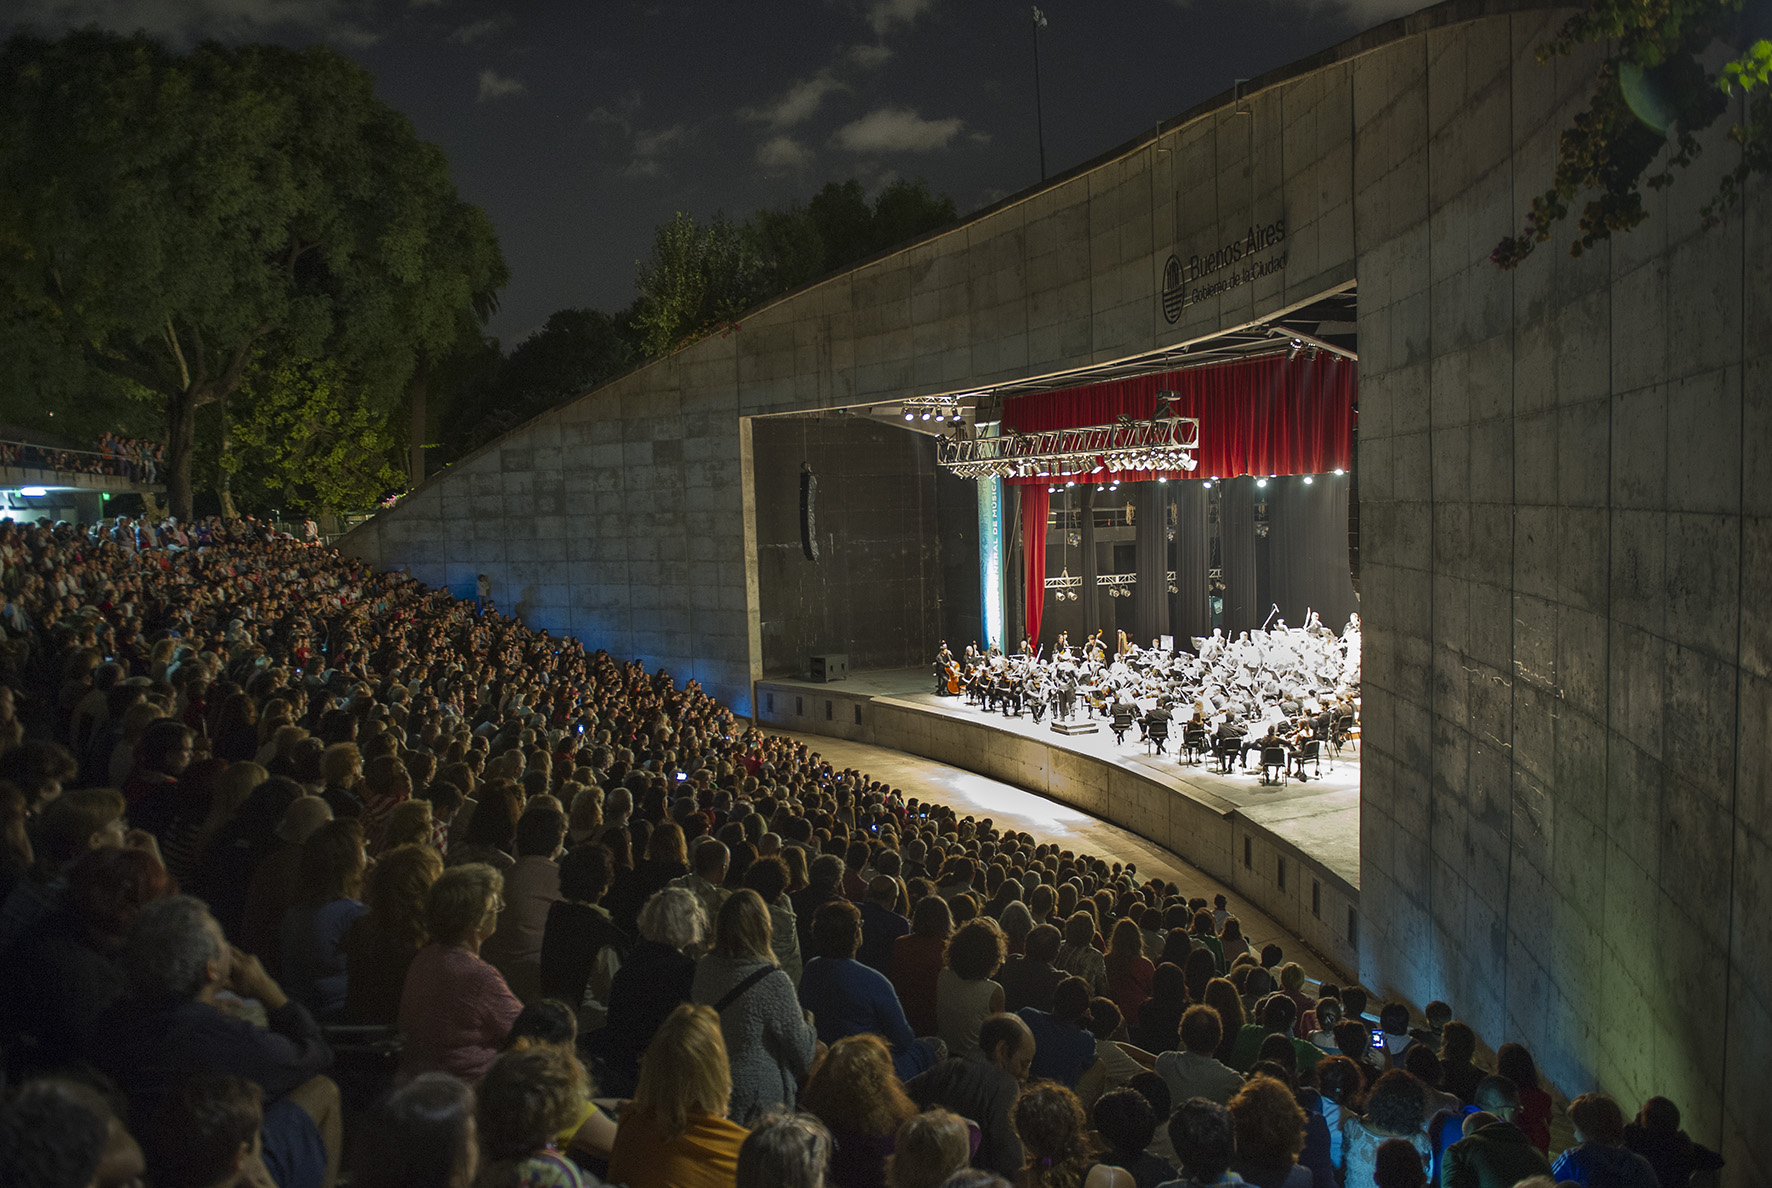 La Orquesta Estable del Teatro Colón ofrecerá un concierto gratuito al aire libre en el Anfiteatro del Parque Centenario